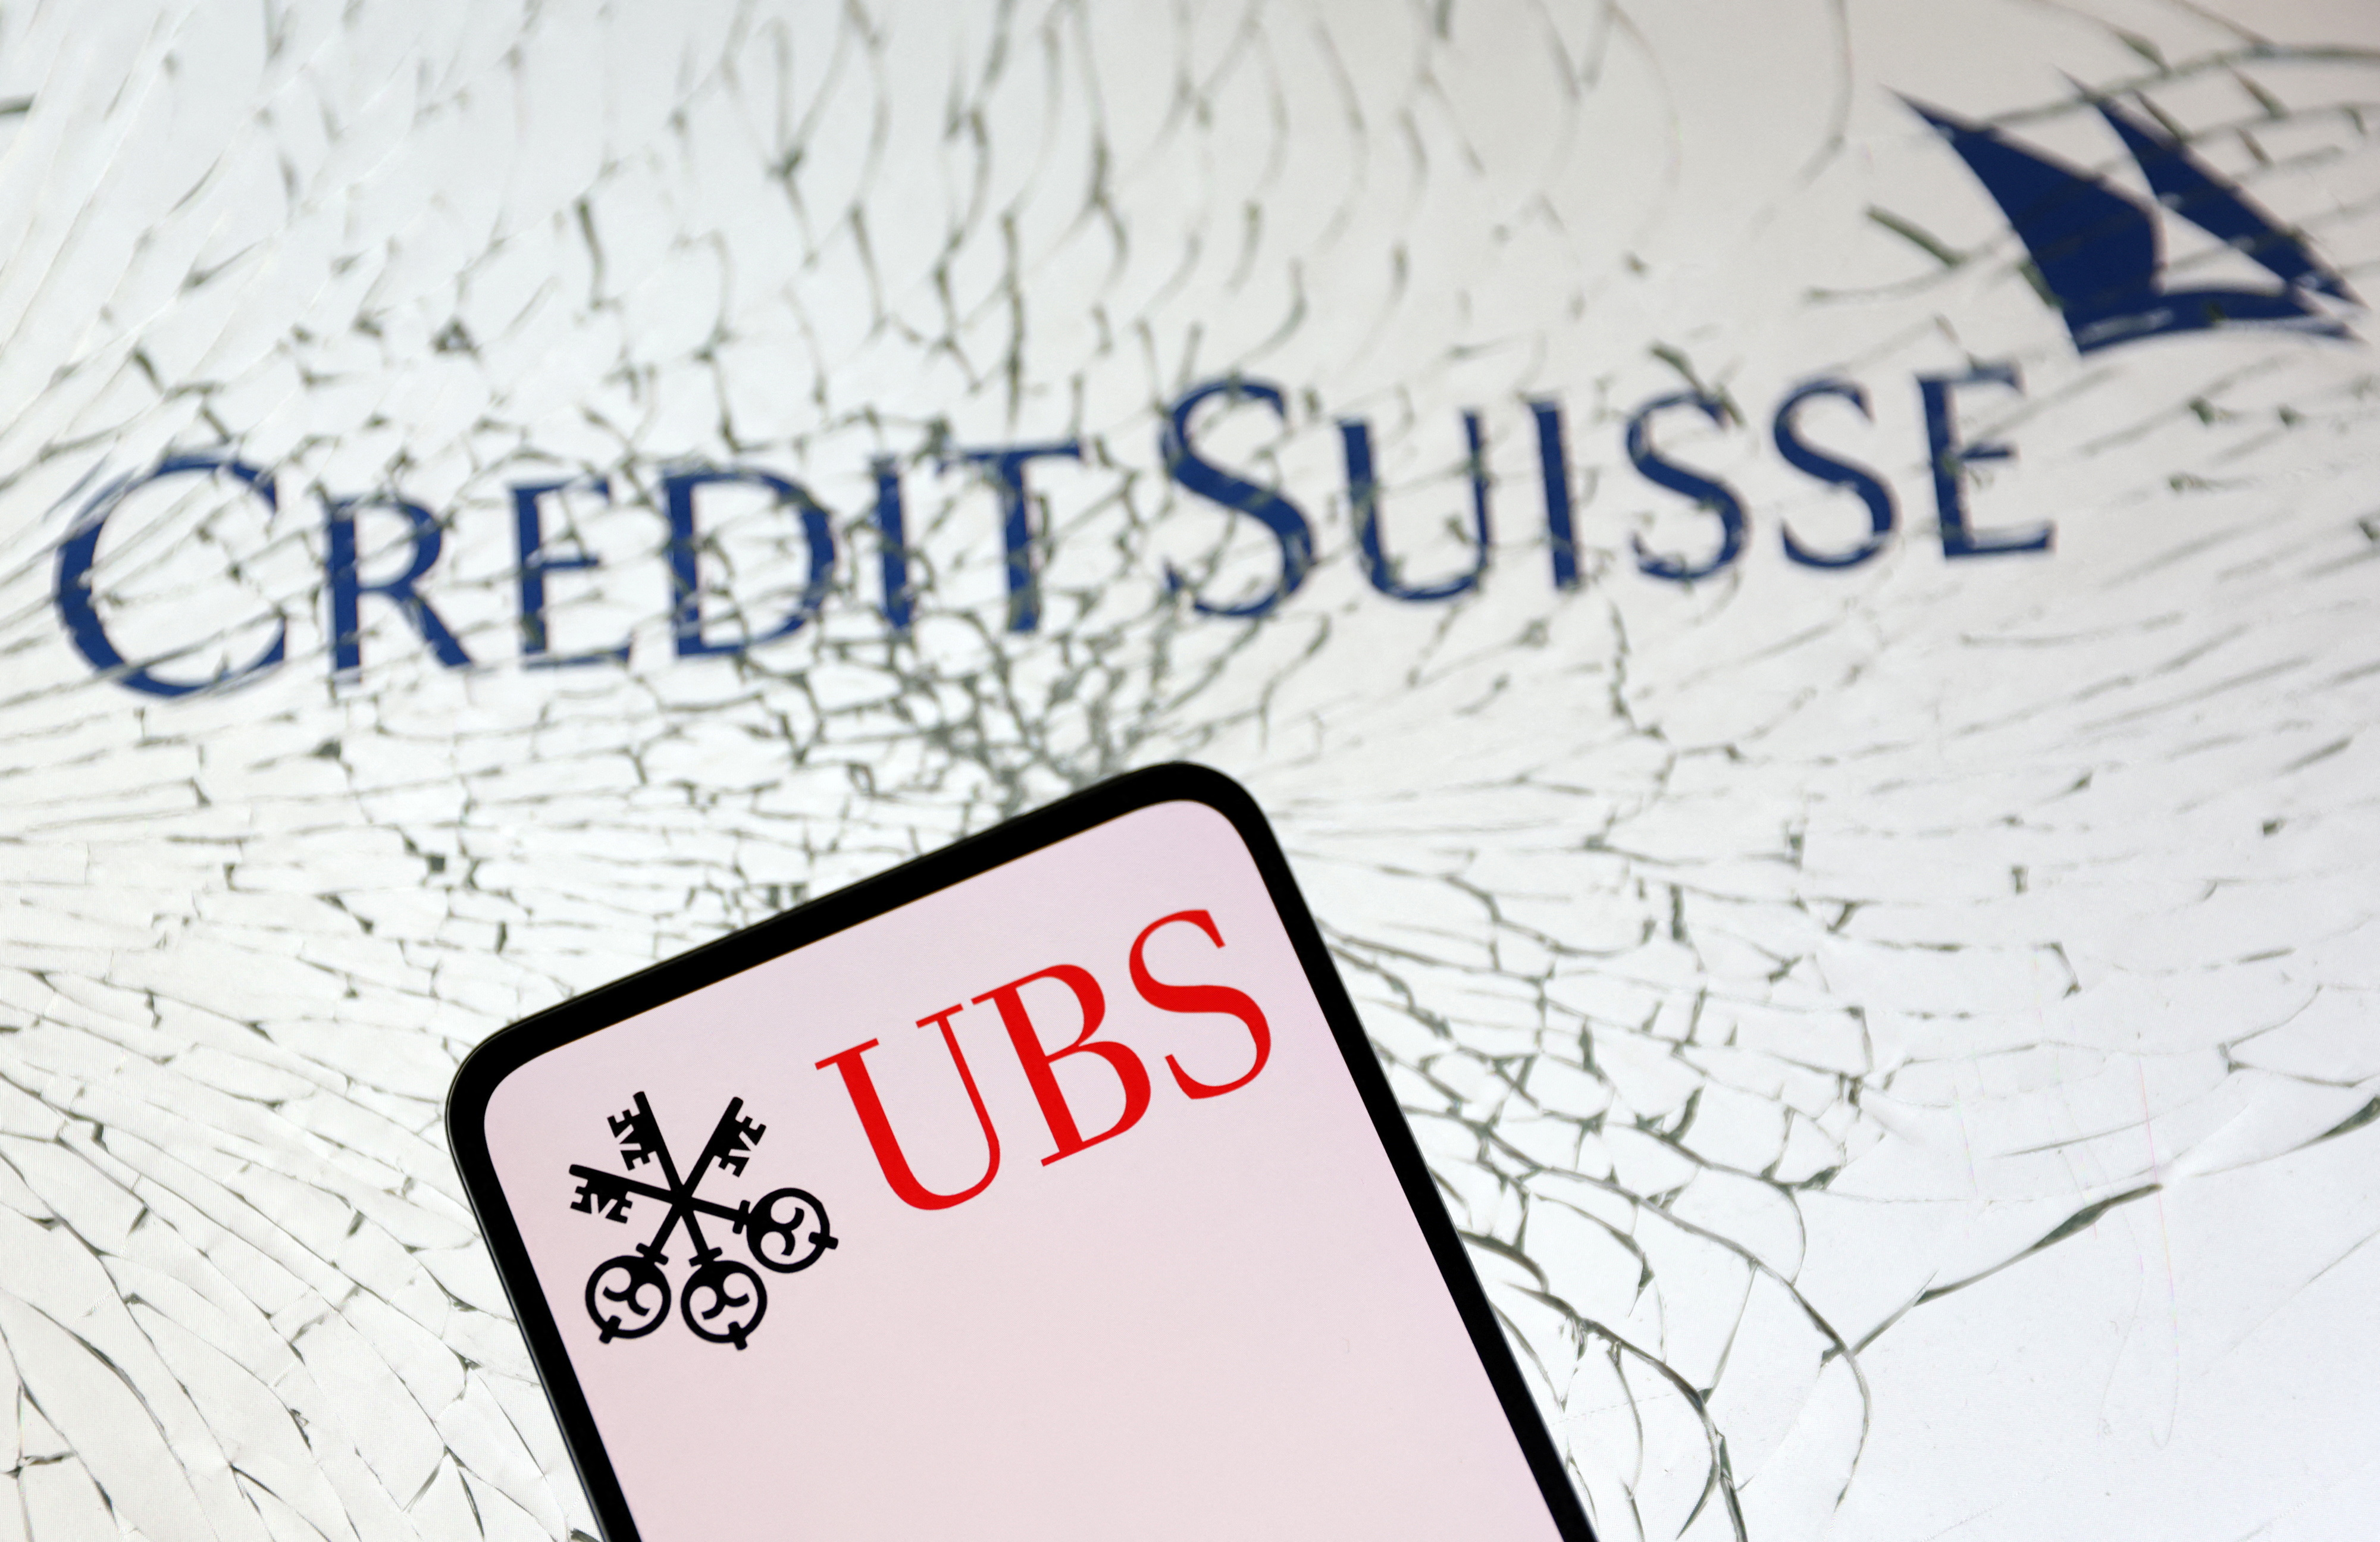 UBS propose seulement 1 milliard de dollars pour Credit suisse, les salariés s'inquiètent pour l'emploi